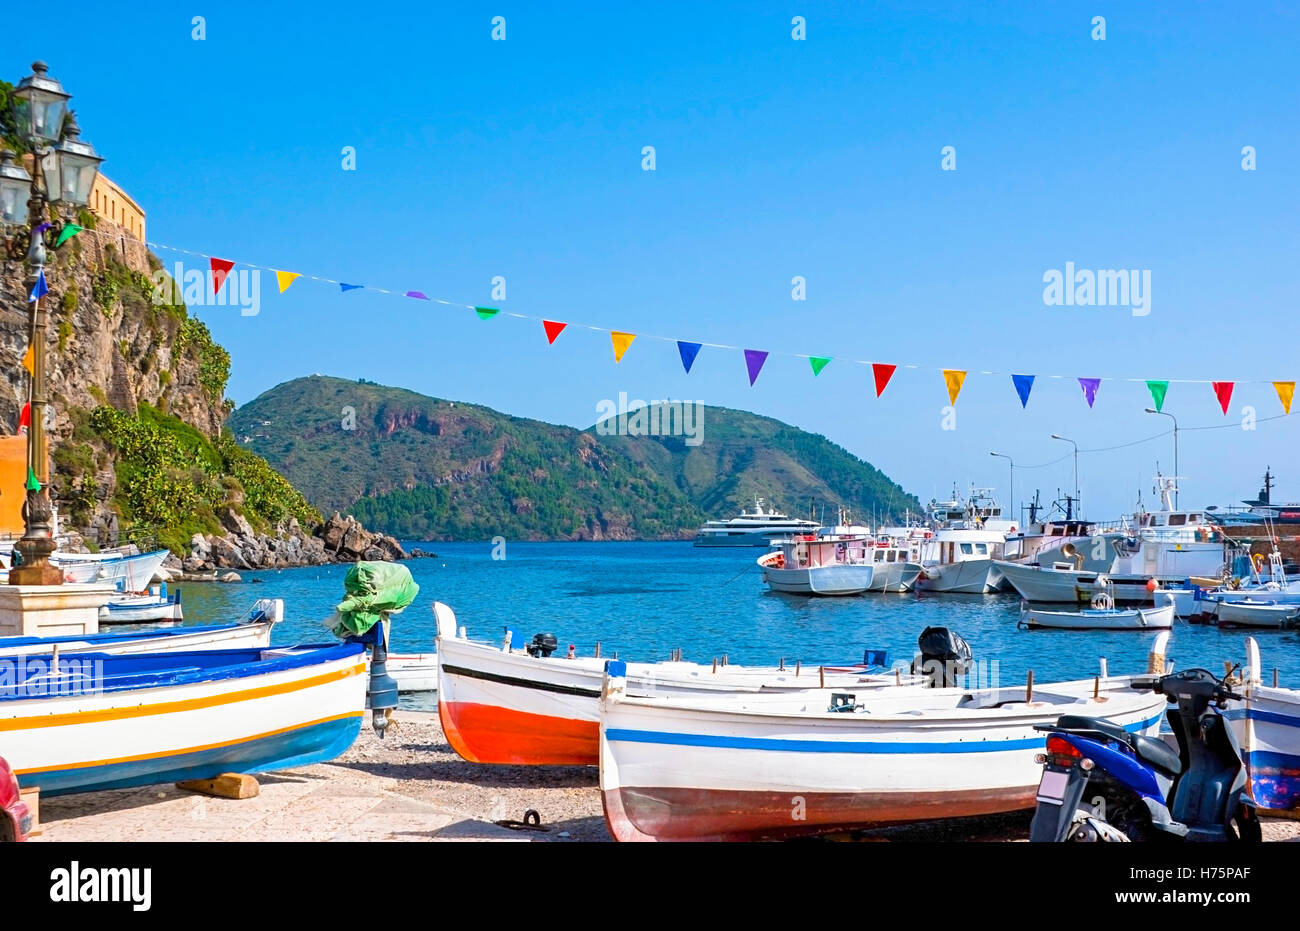 Marina Corta gehört zu den wichtigsten Häfen der Insel Lipari, für kleinere Boote, befindet sich in der Stadt Lipari, Italien verwendet. Stockfoto